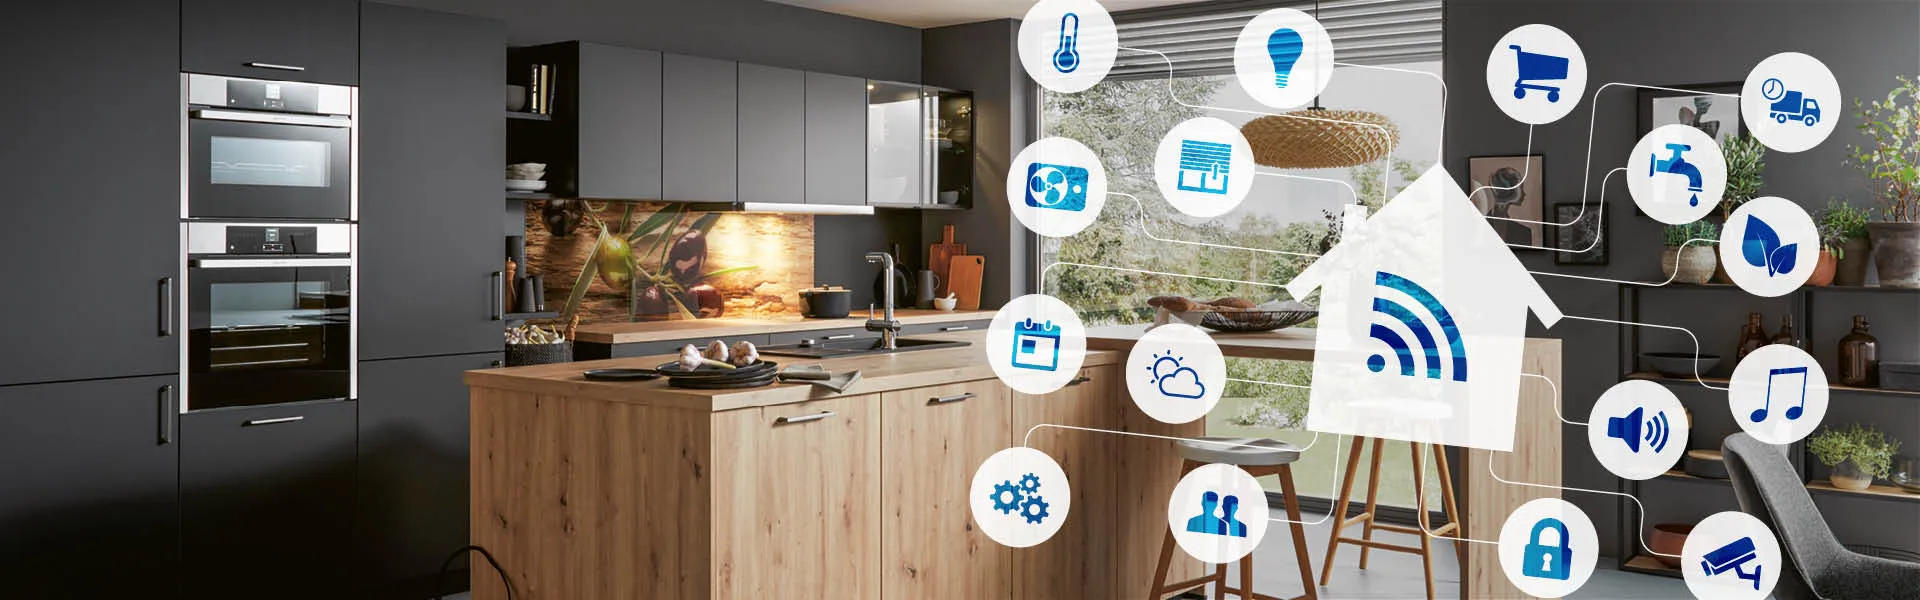 Moderne Küche im Hintergrund mit 'smart' Icons im Vordergrund vermitteln eine Anspielung auf 'Smart Kitchens'.